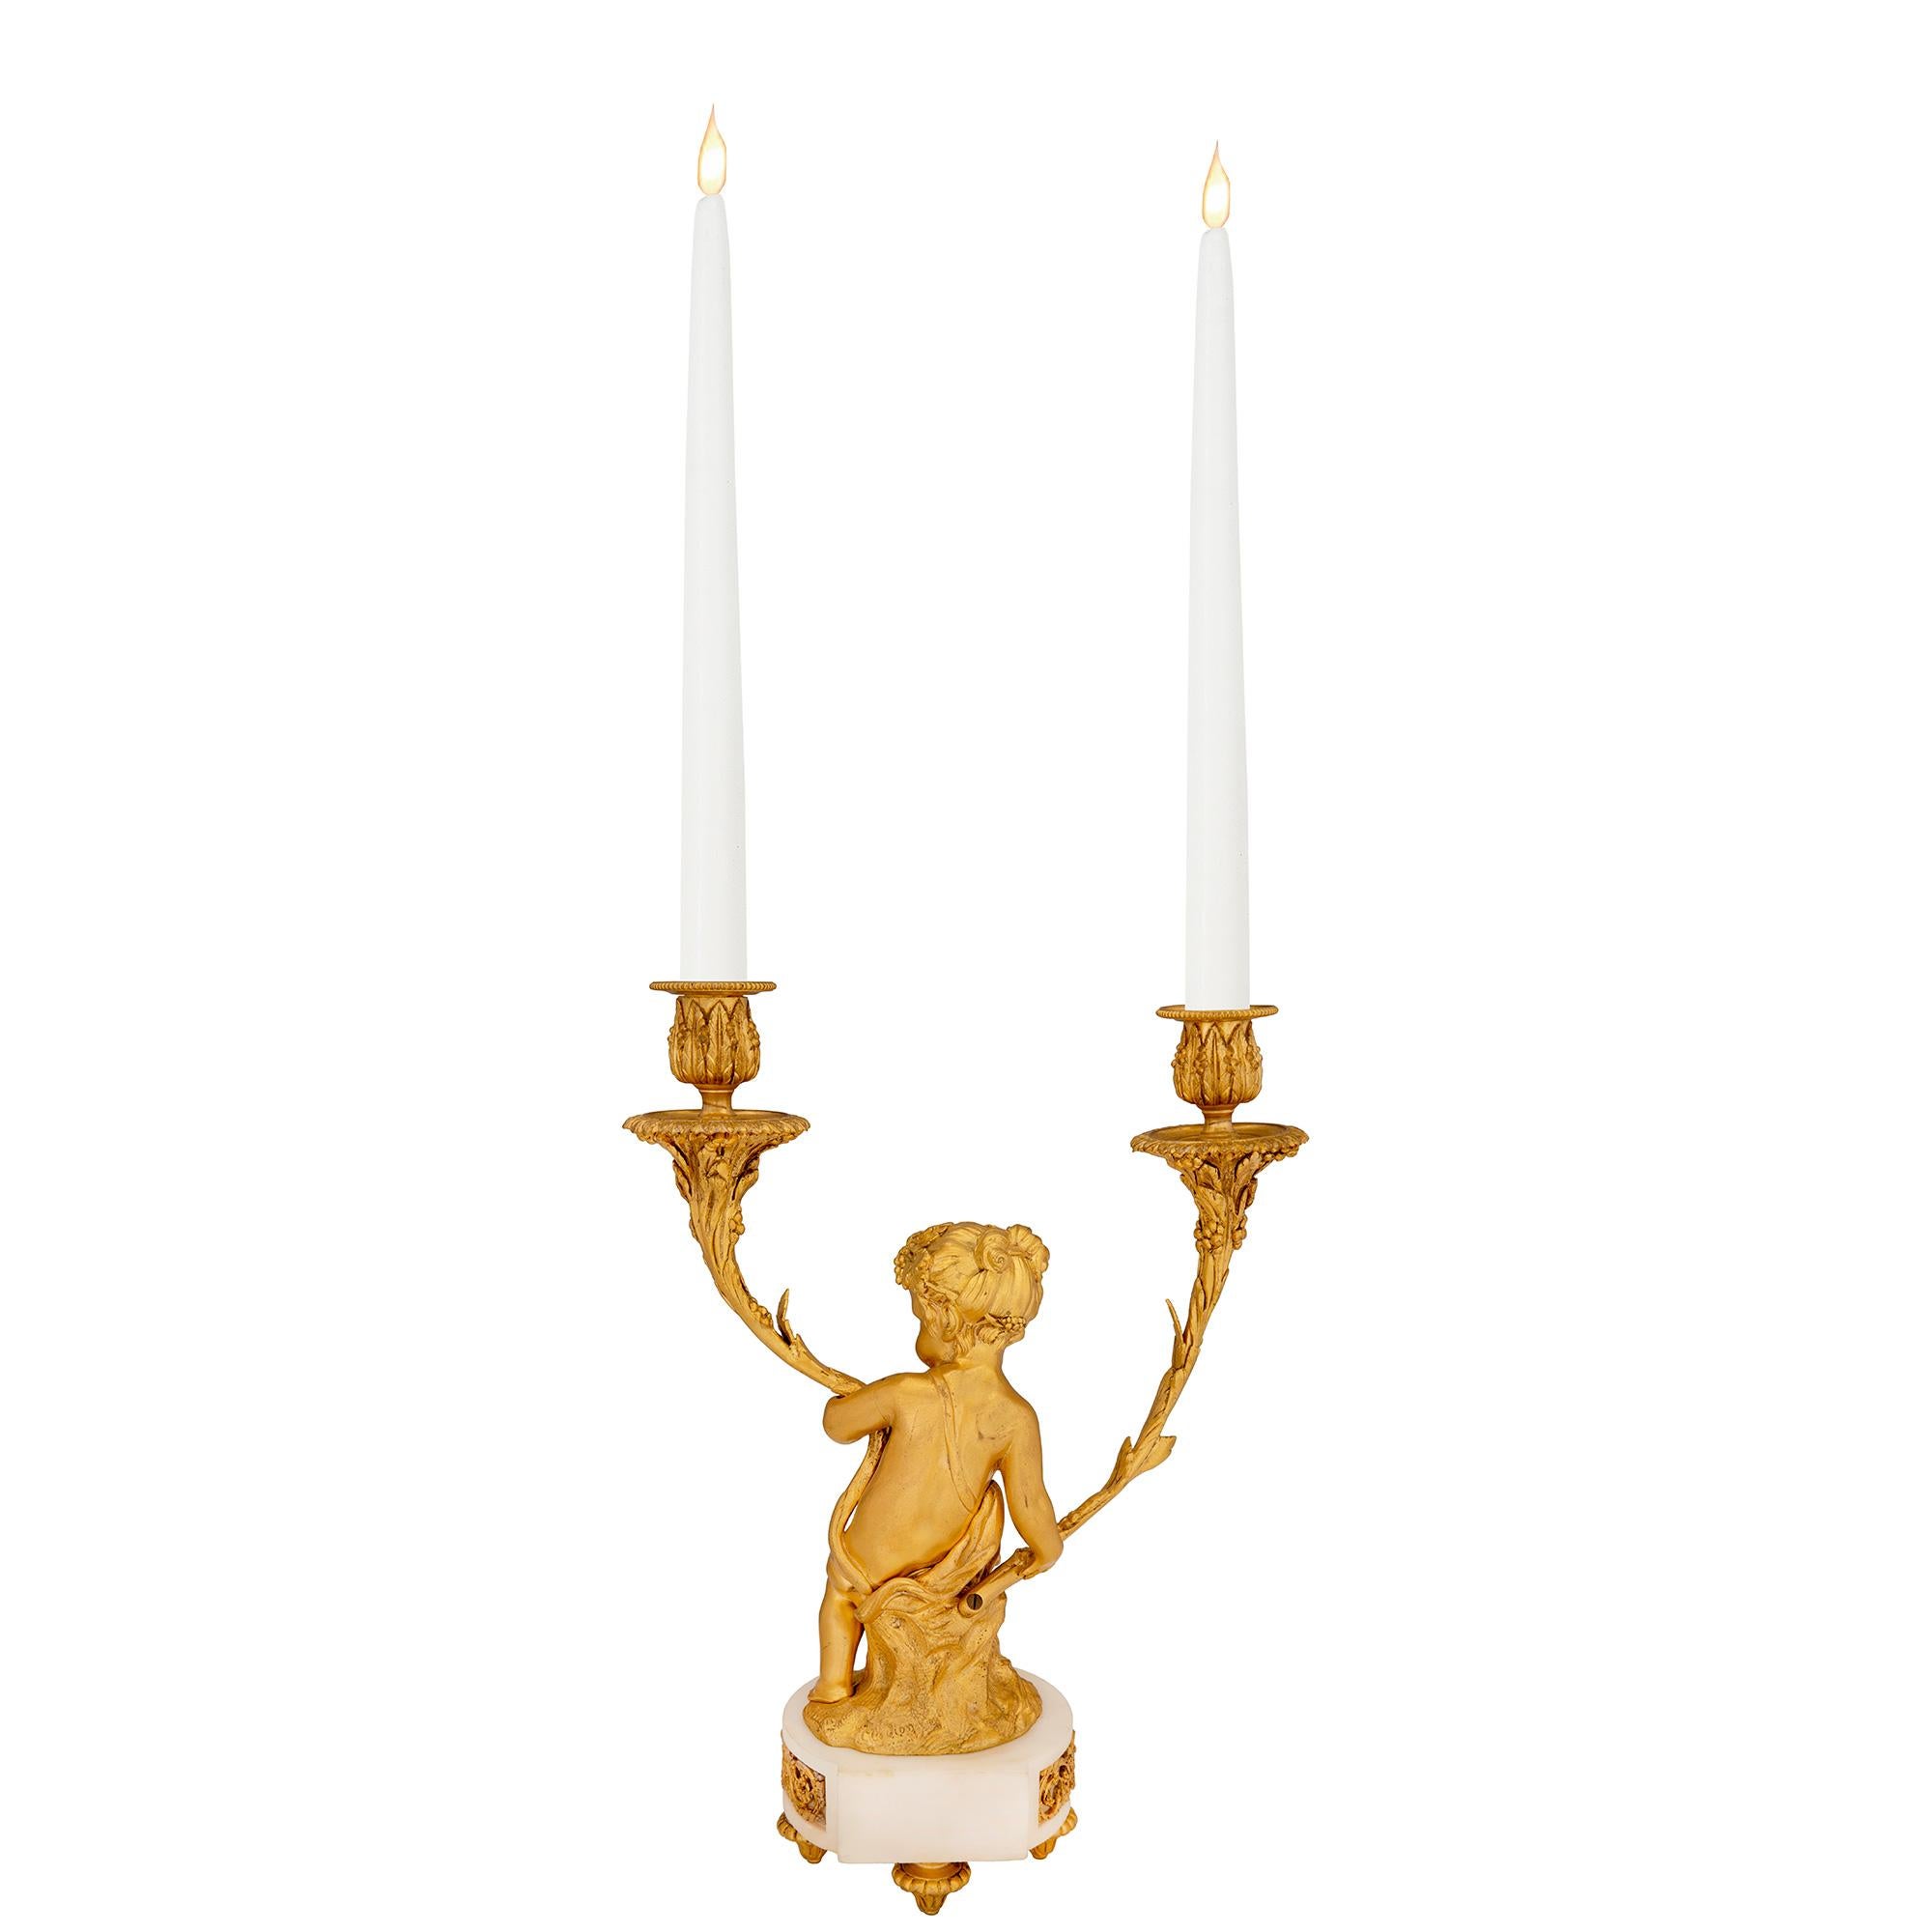 Un exquis candélabre français du 19ème siècle de style Louis XVI en bronze doré et marbre blanc de Carrare, modelé d'après Clodion. Le candélabre à deux bras est surélevé par de fins pieds en forme de topie sous la base en marbre blanc de Carrare